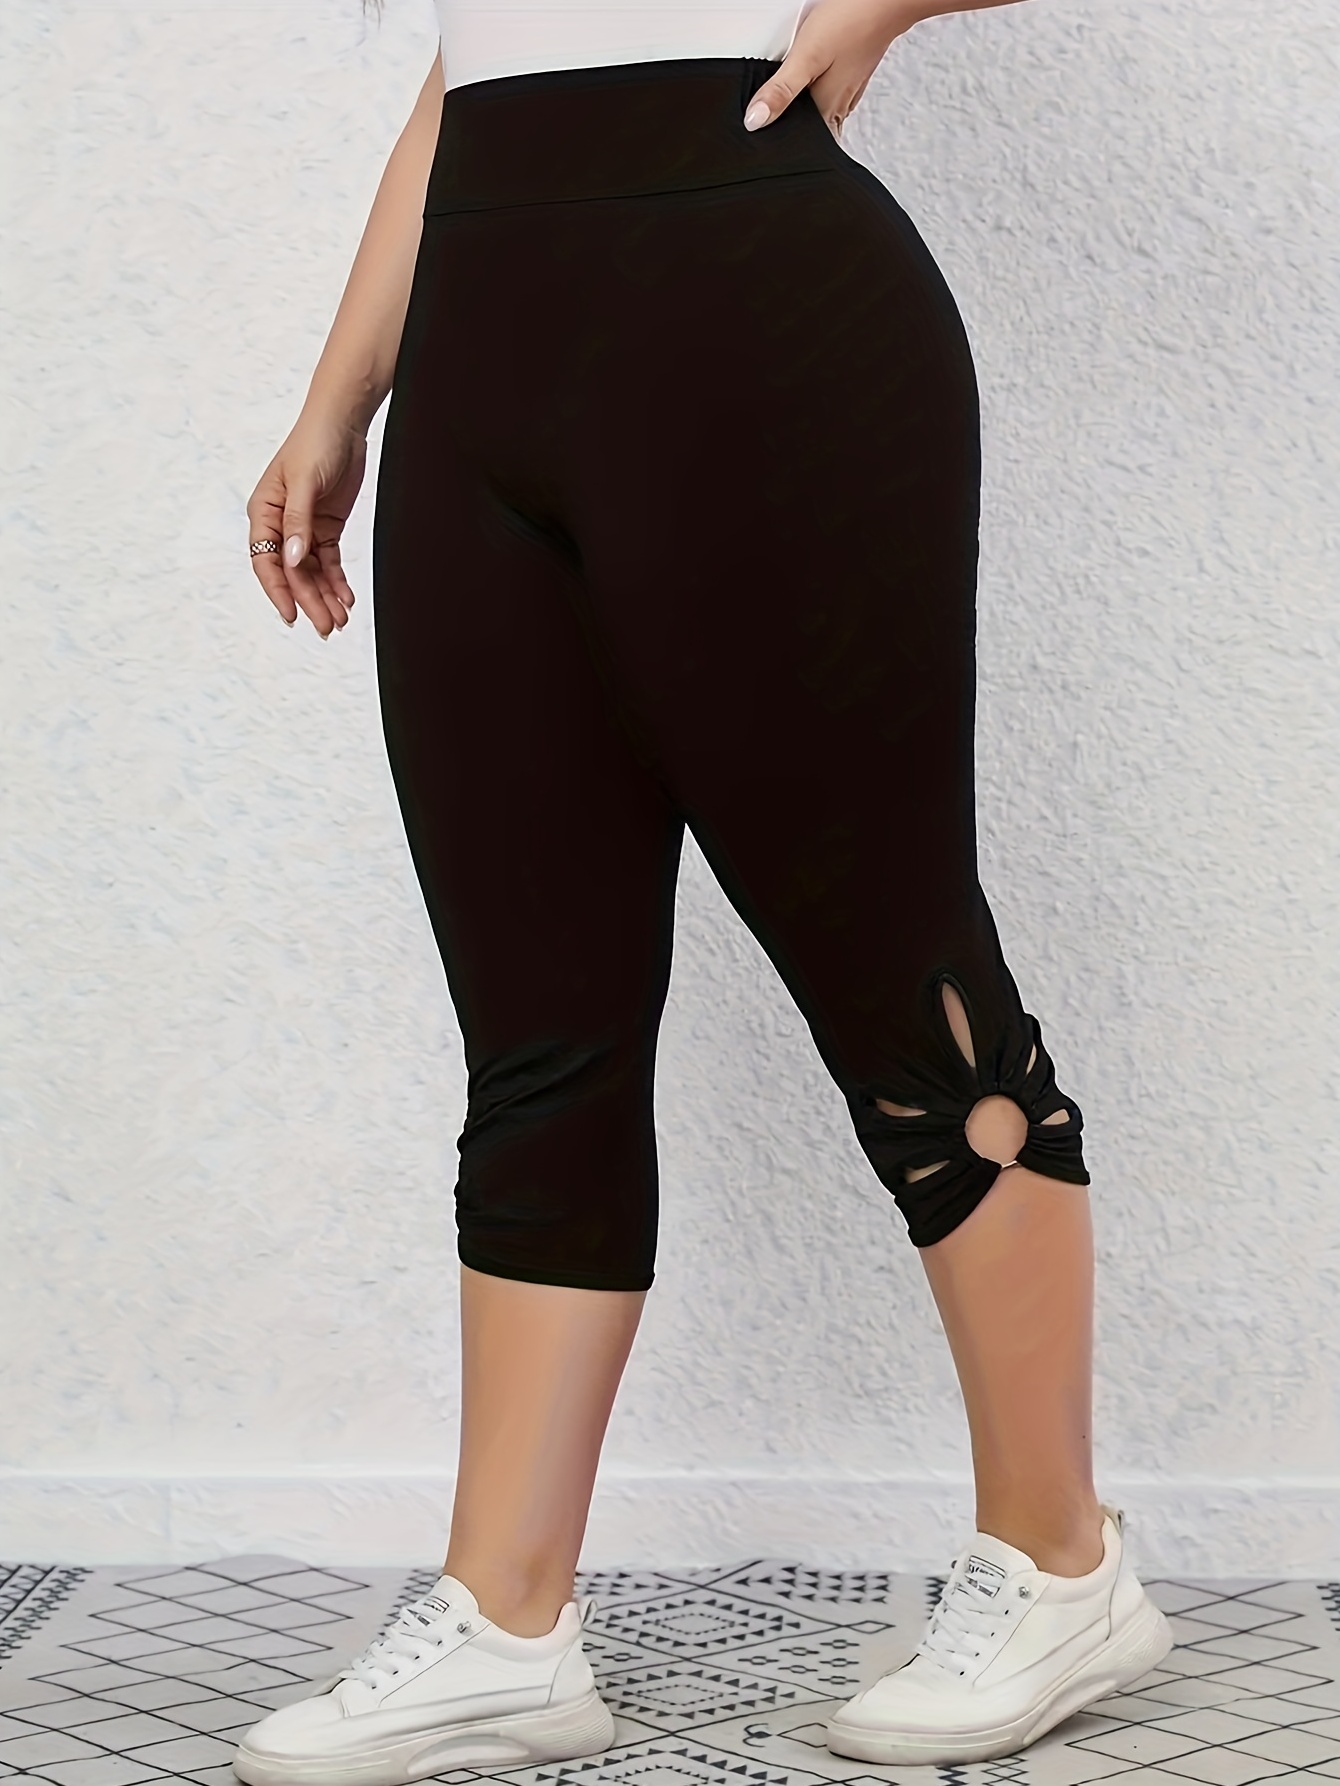 New Balance Women’s Activewear Capri Leggings Size Med - Black 